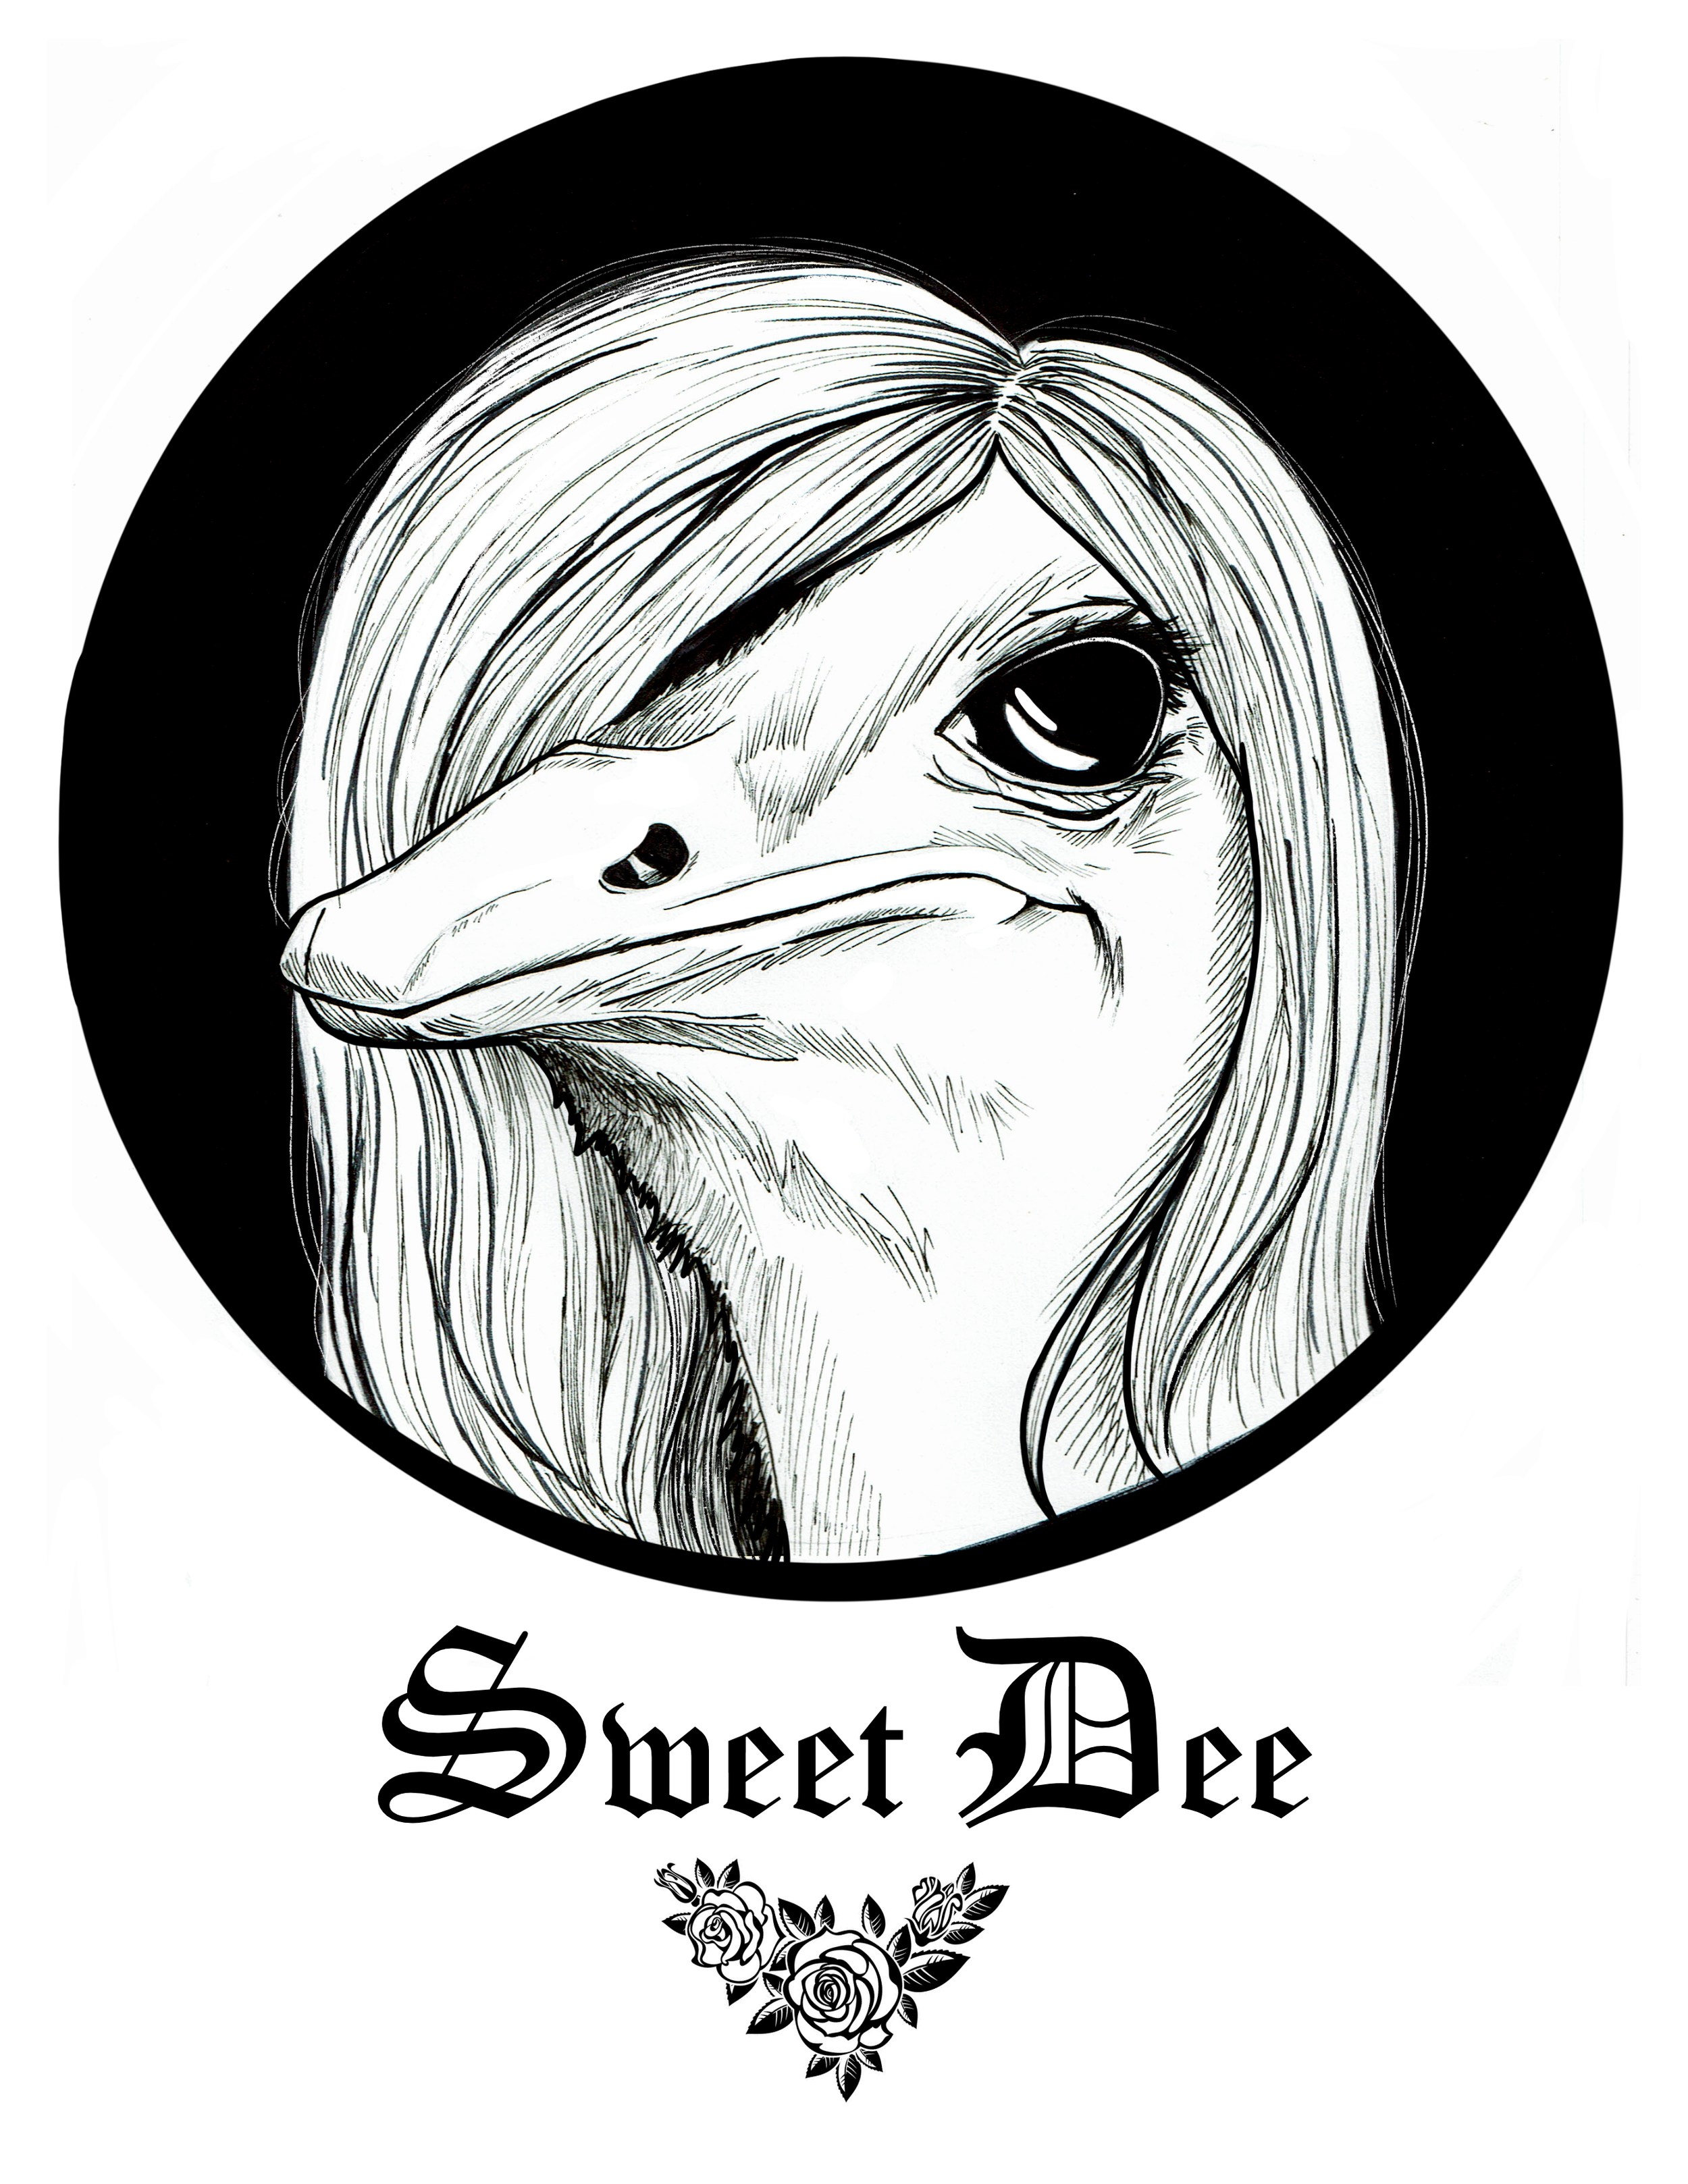 Sweet Dee